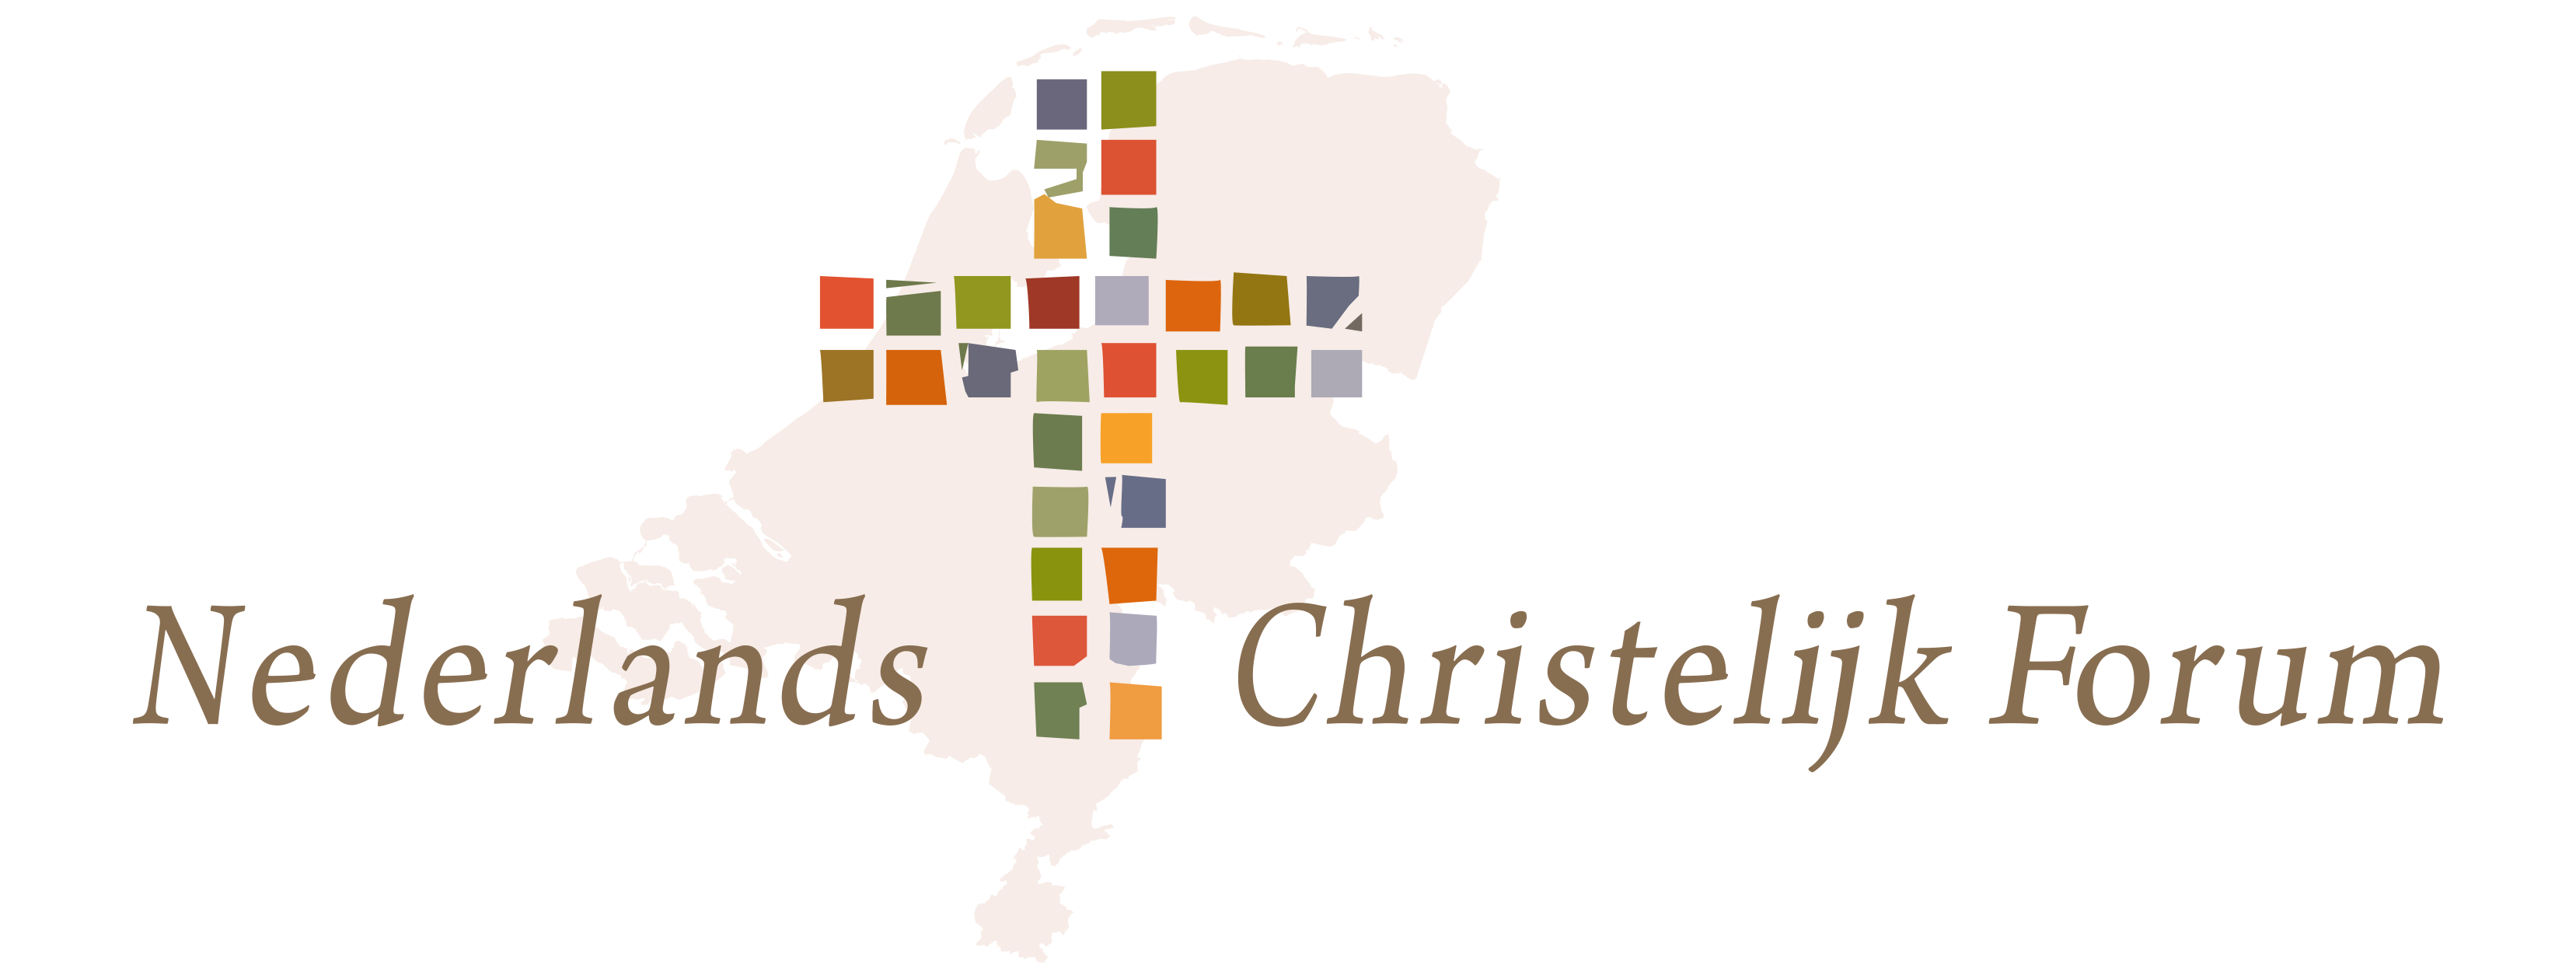 Nederlands Christelijk Forum